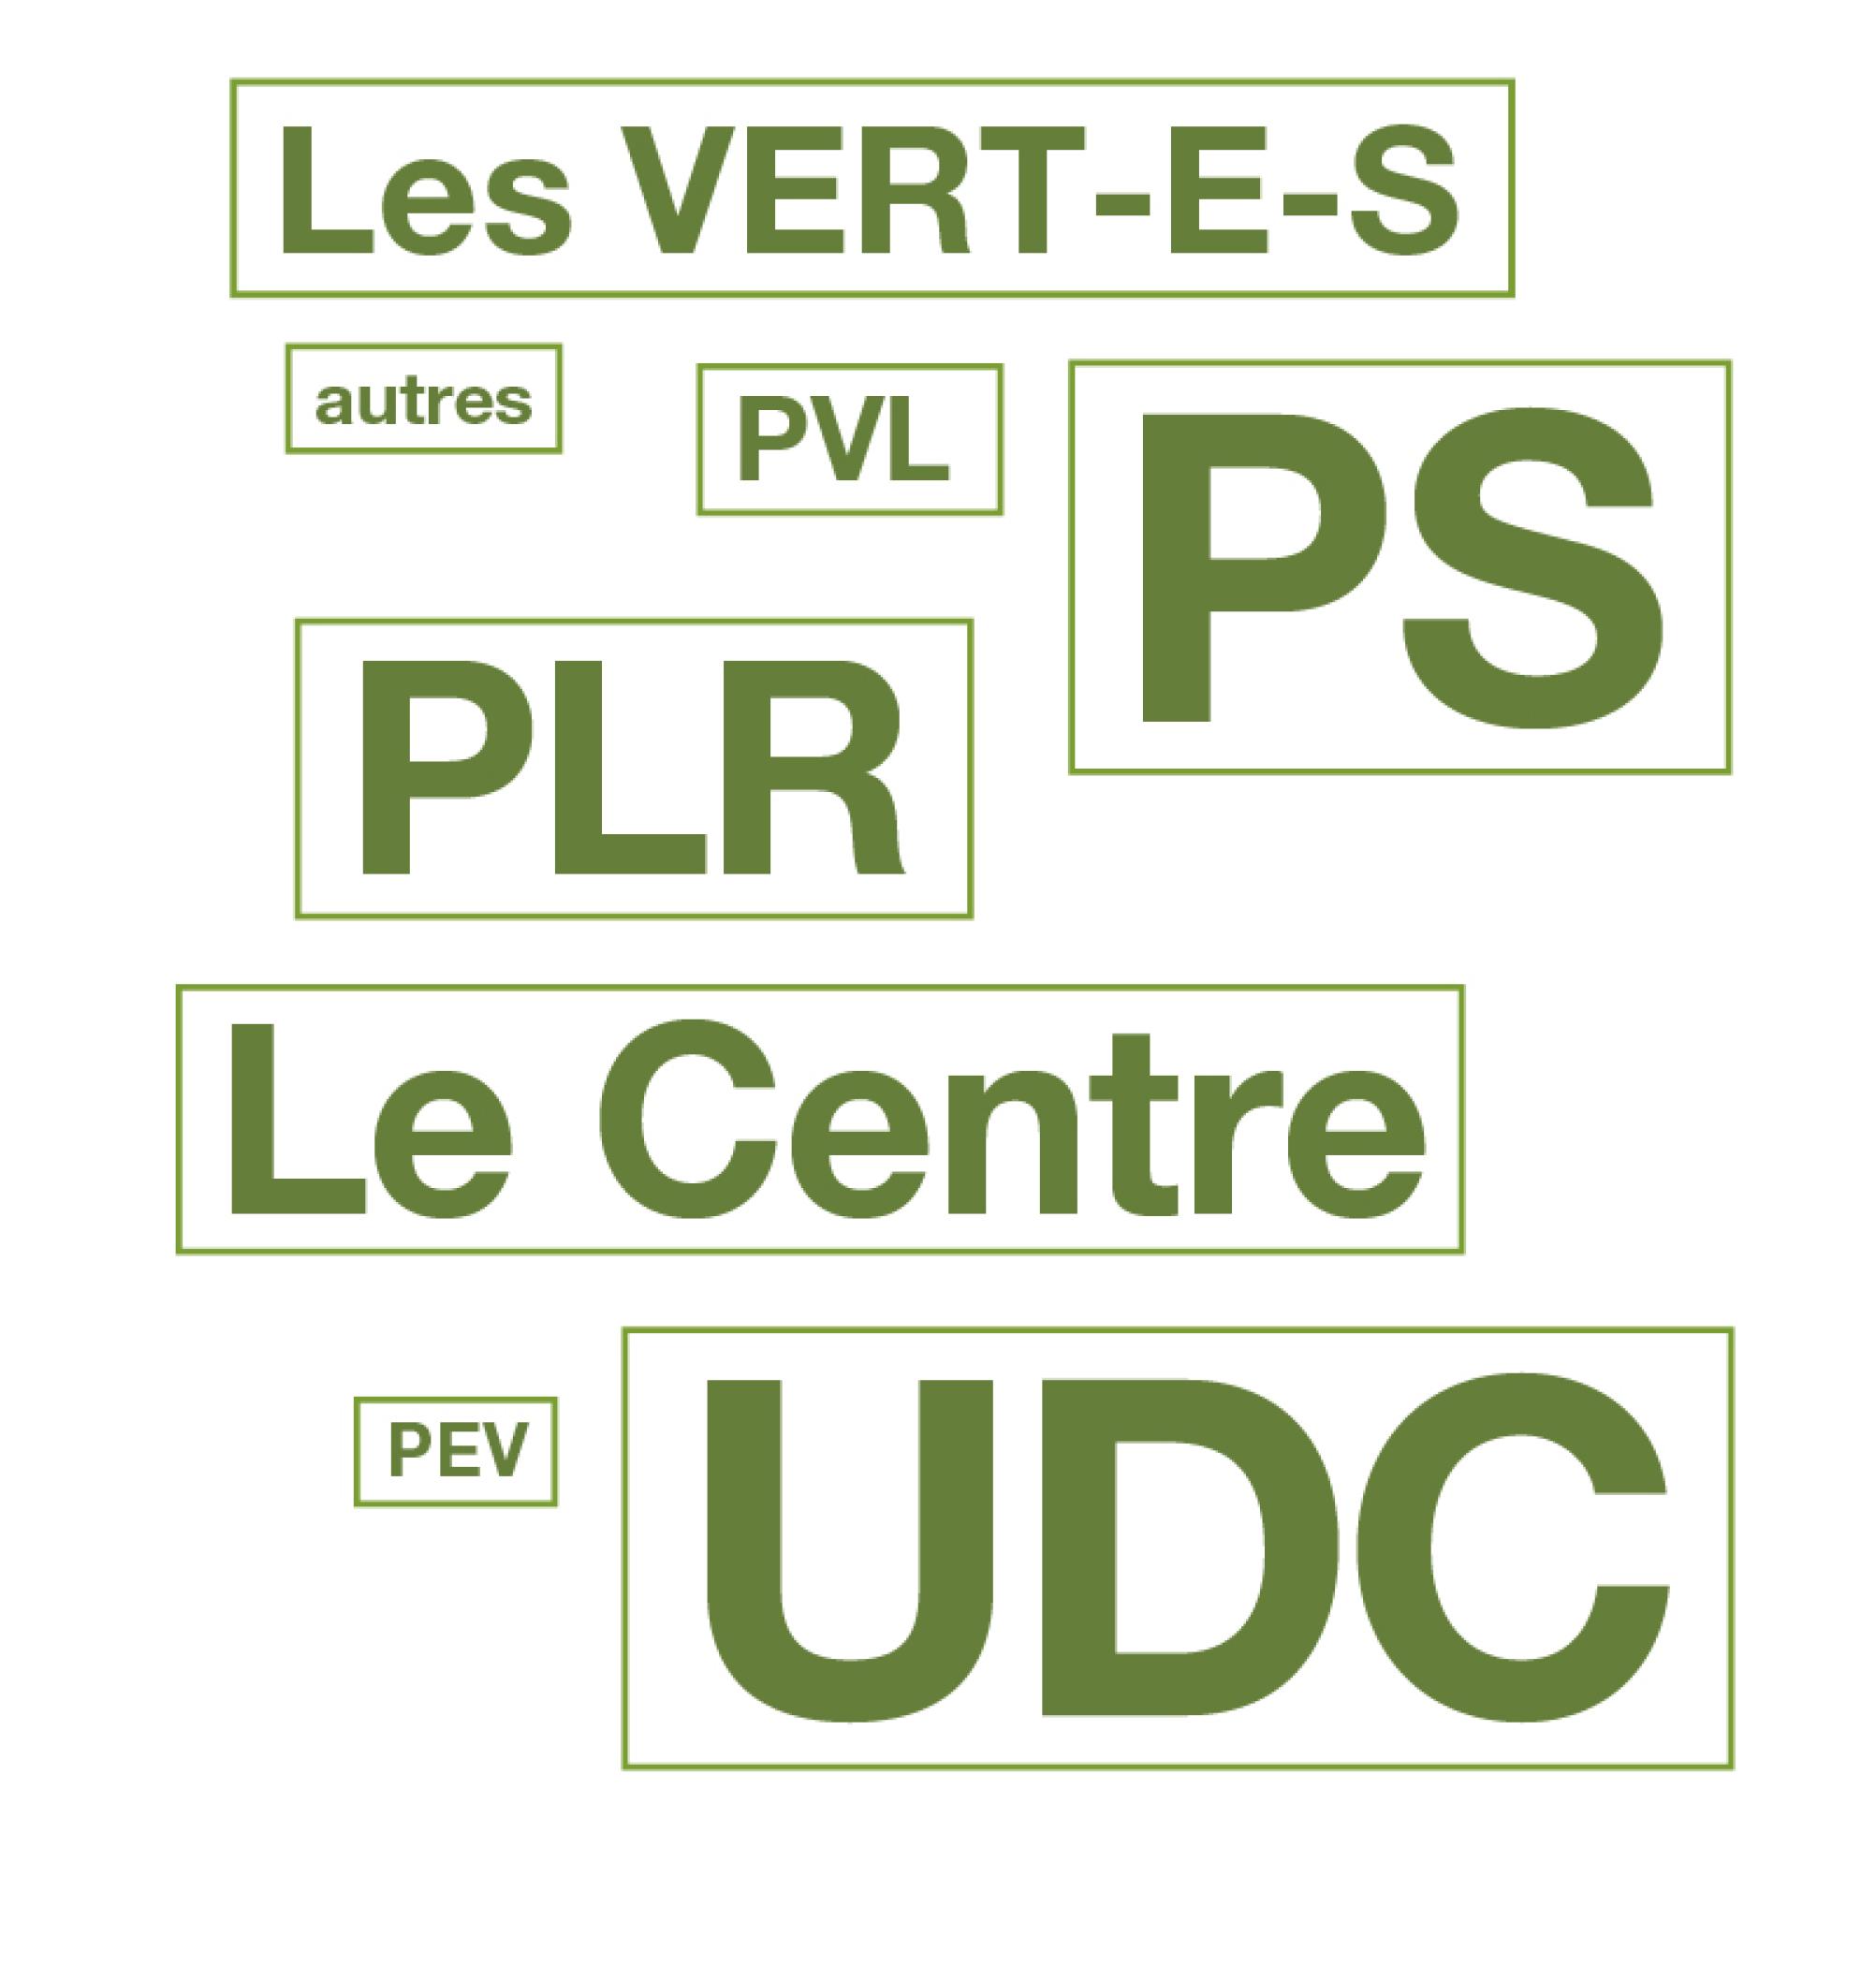 Par ordre d'importance,  le paysage politique suisse : UDC, PS, PLR, Le Centre, Les Verts, PVL, PEV, autres.